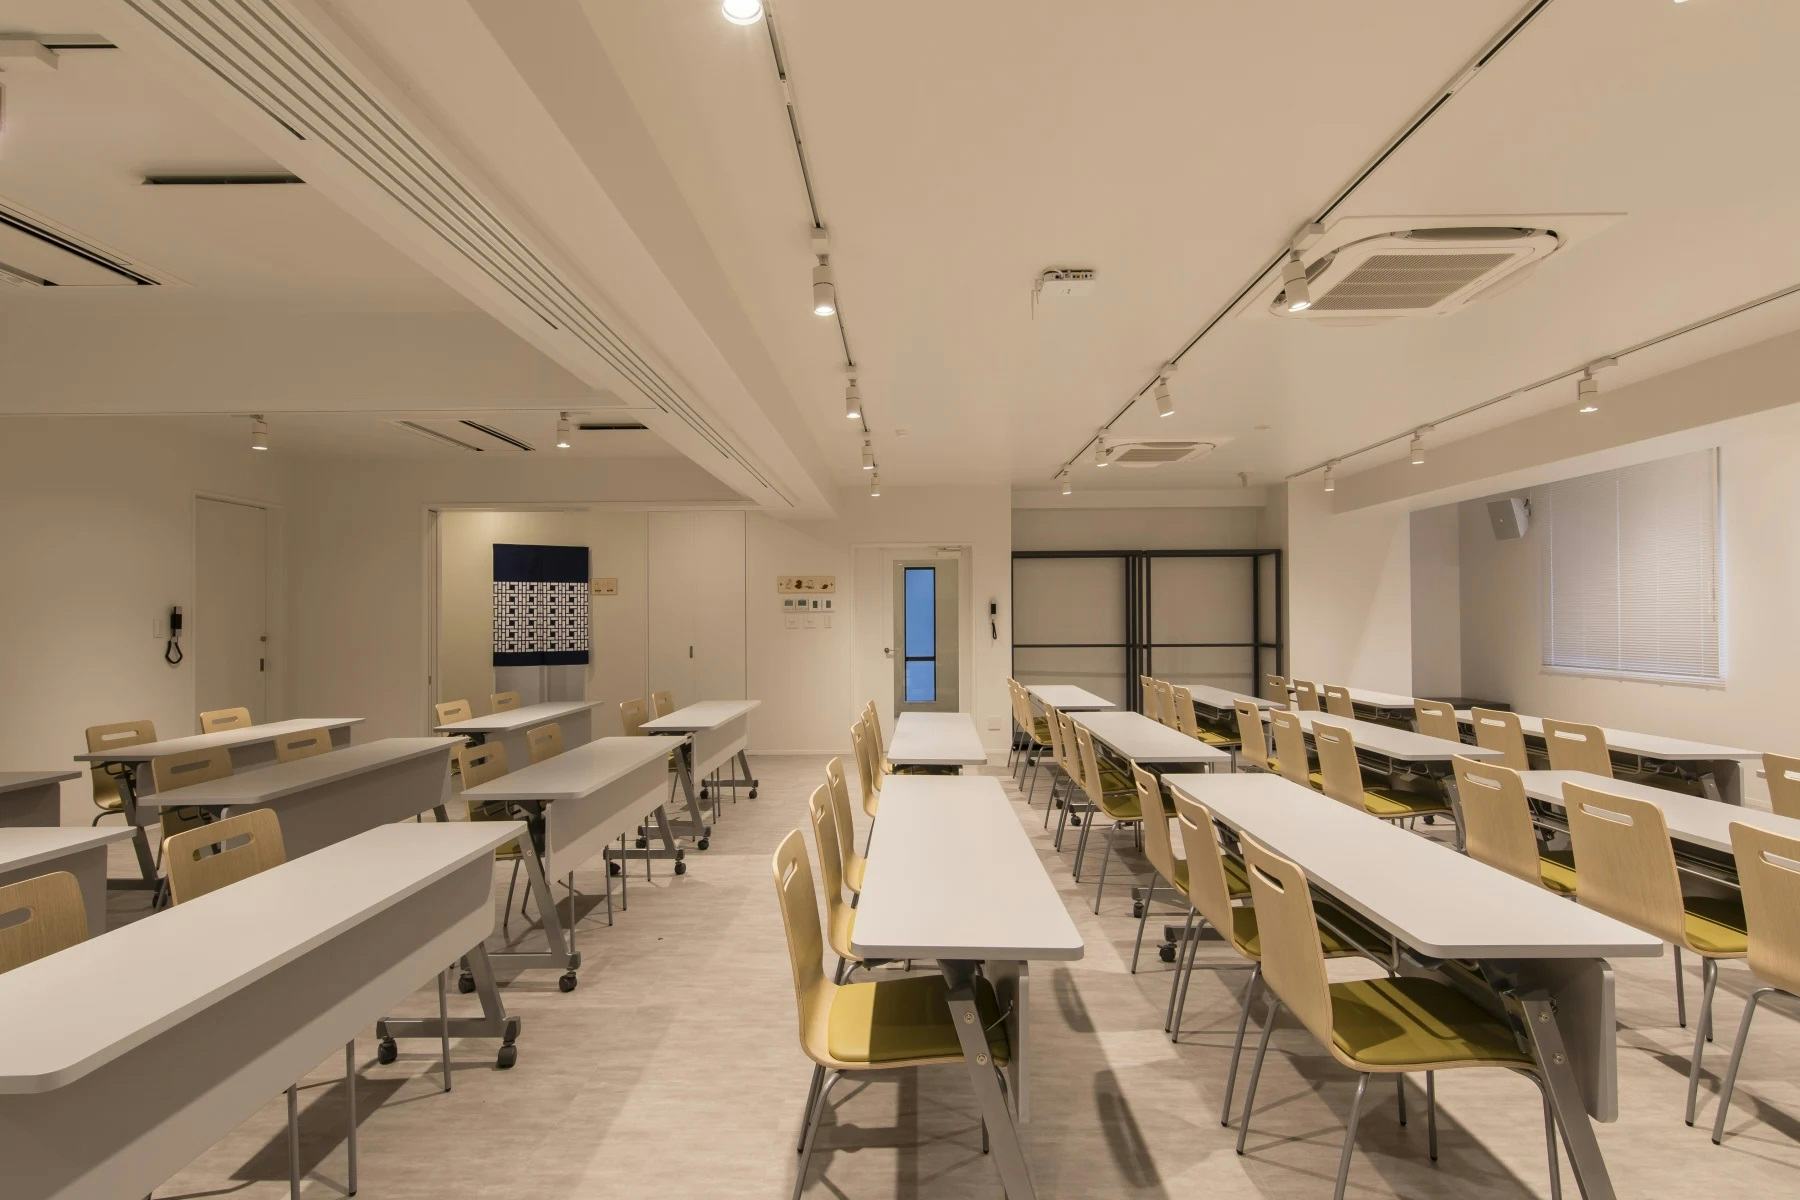 【新宿三丁目駅4分】新入社員向け研修やワークショップに適した40名収容可能な100㎡近い広さのあるイベントスペース